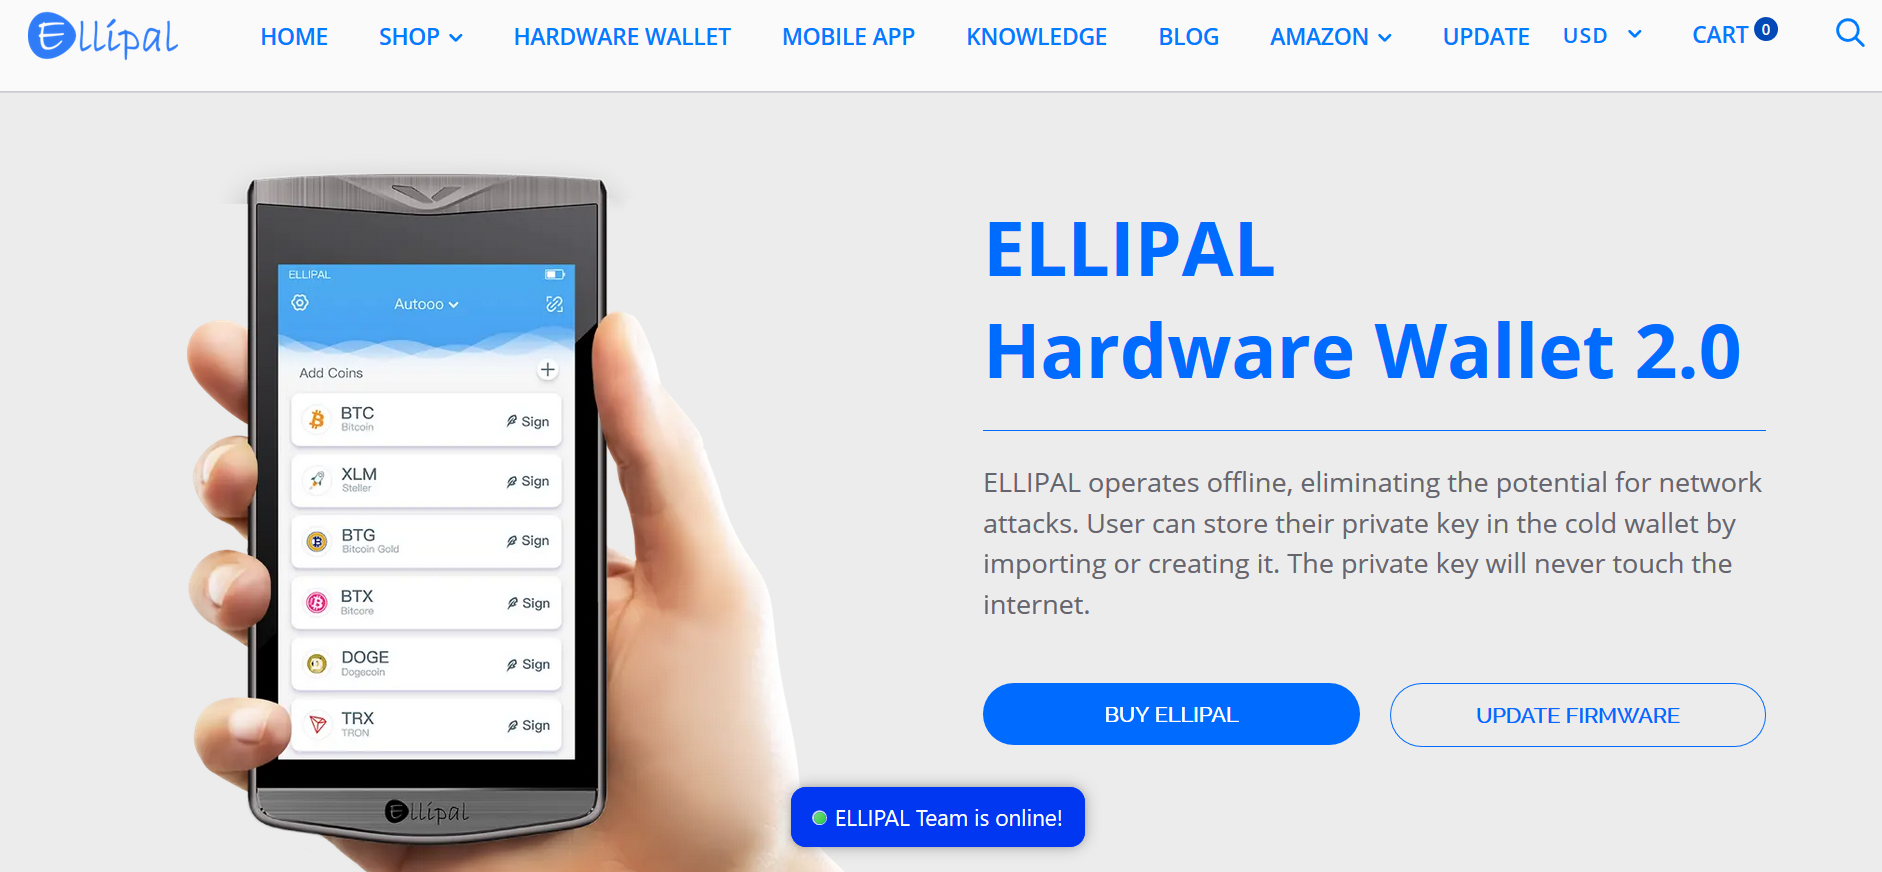 ELLIPAL　Hardware Wallet 2.0